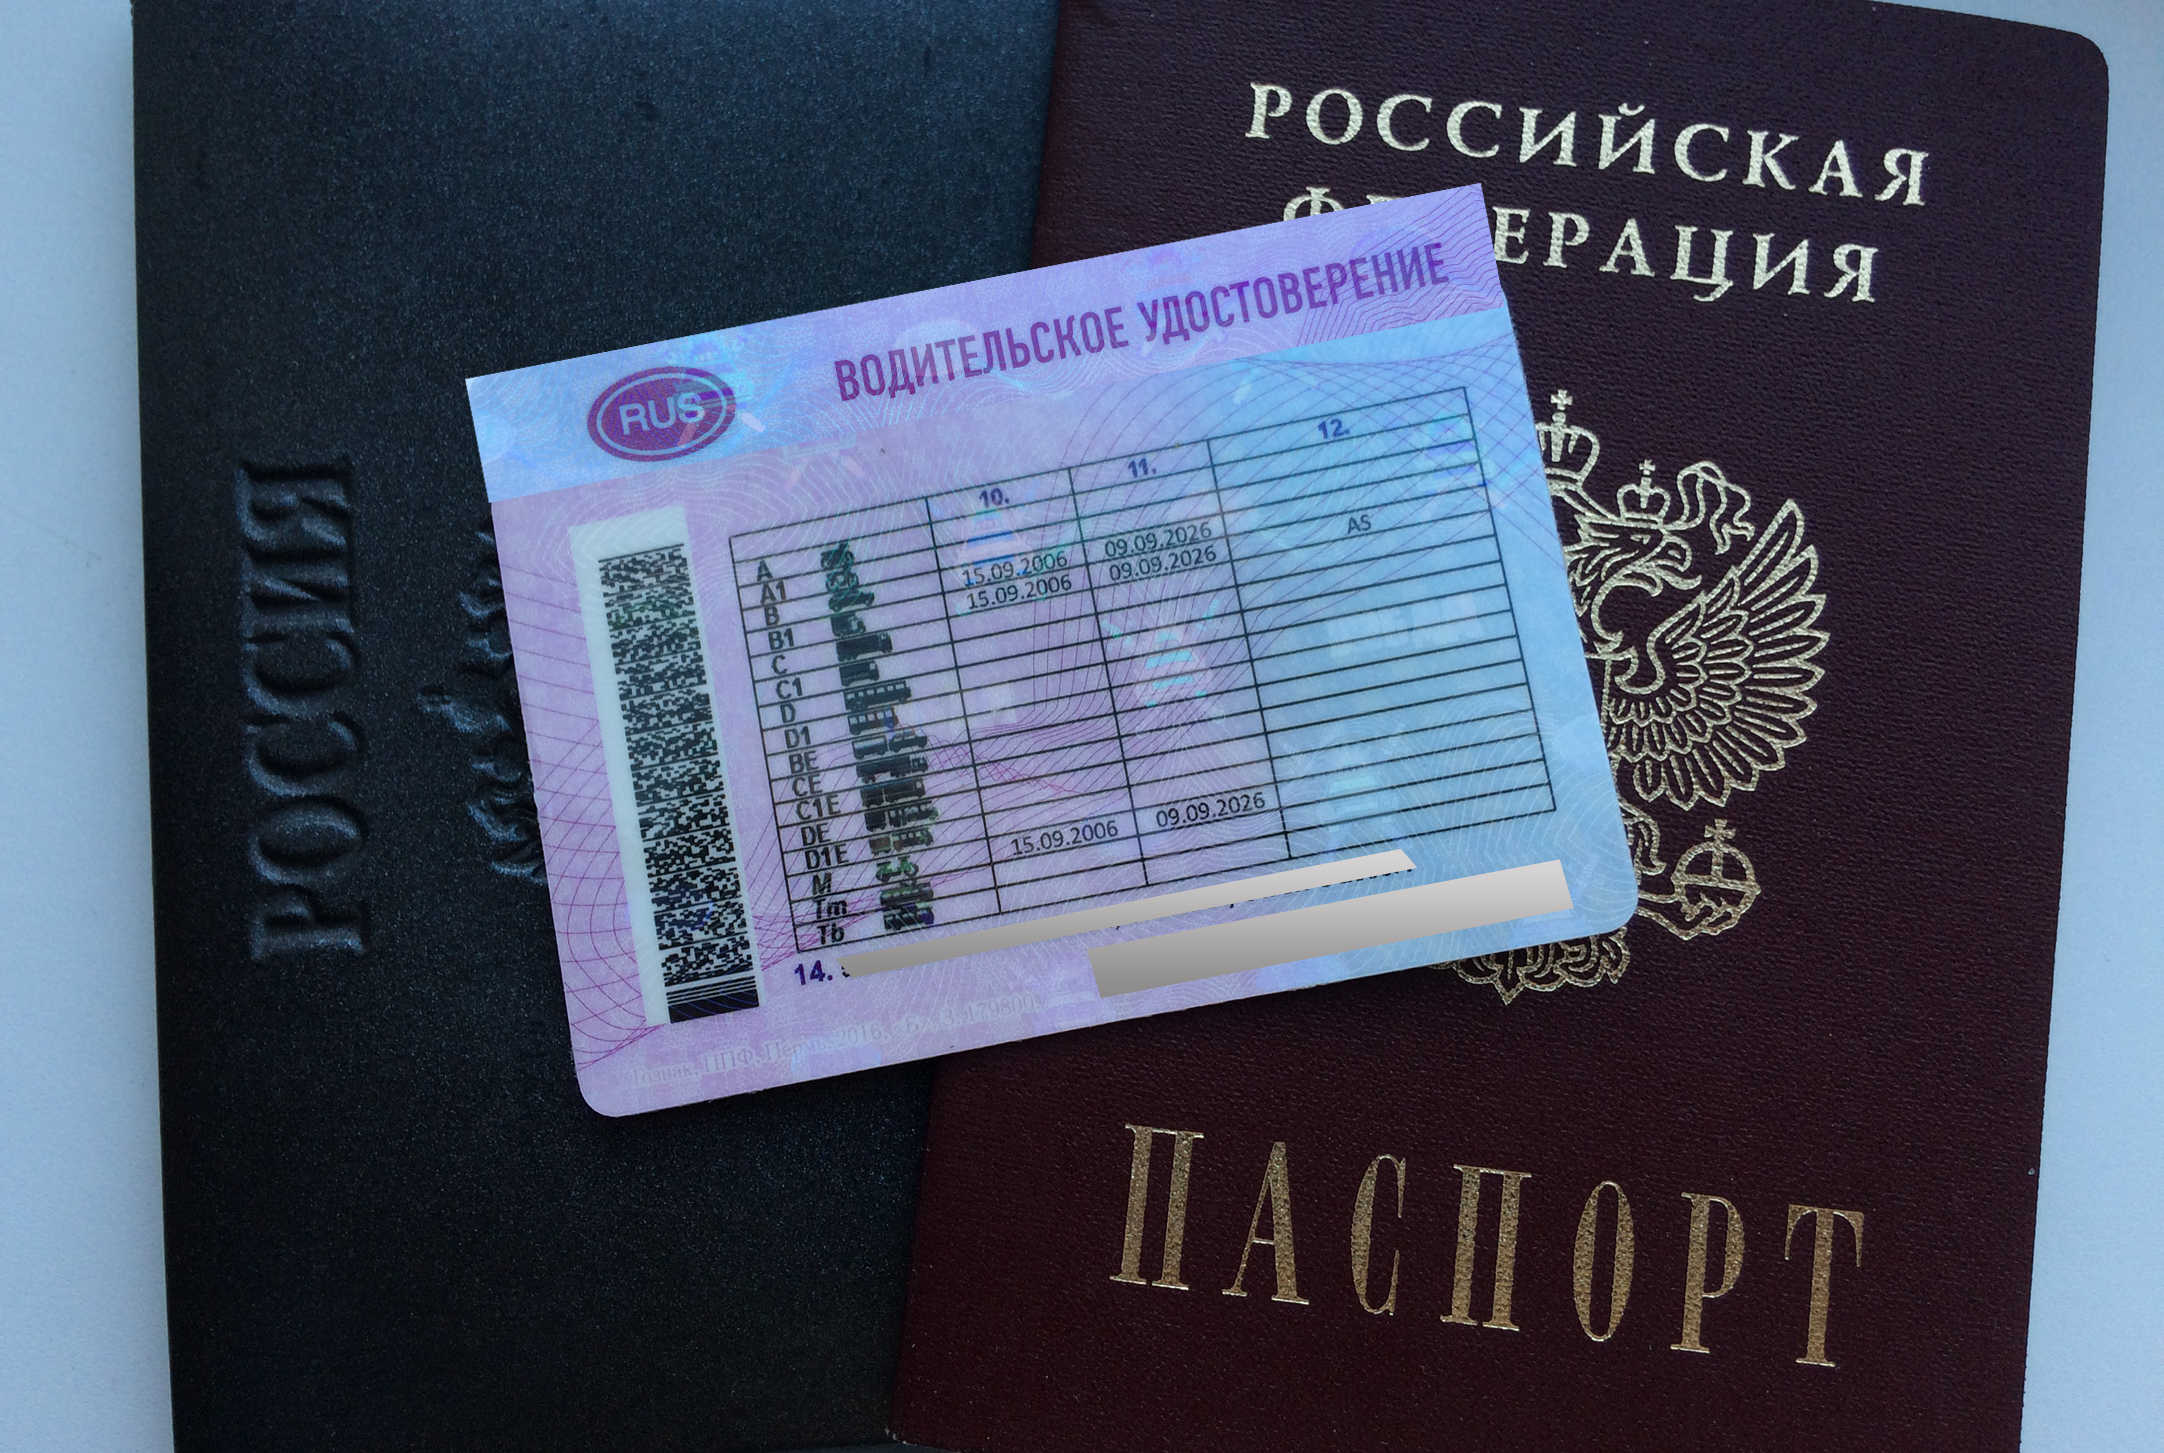 Когда водительское удостоверение может заменить паспорт?